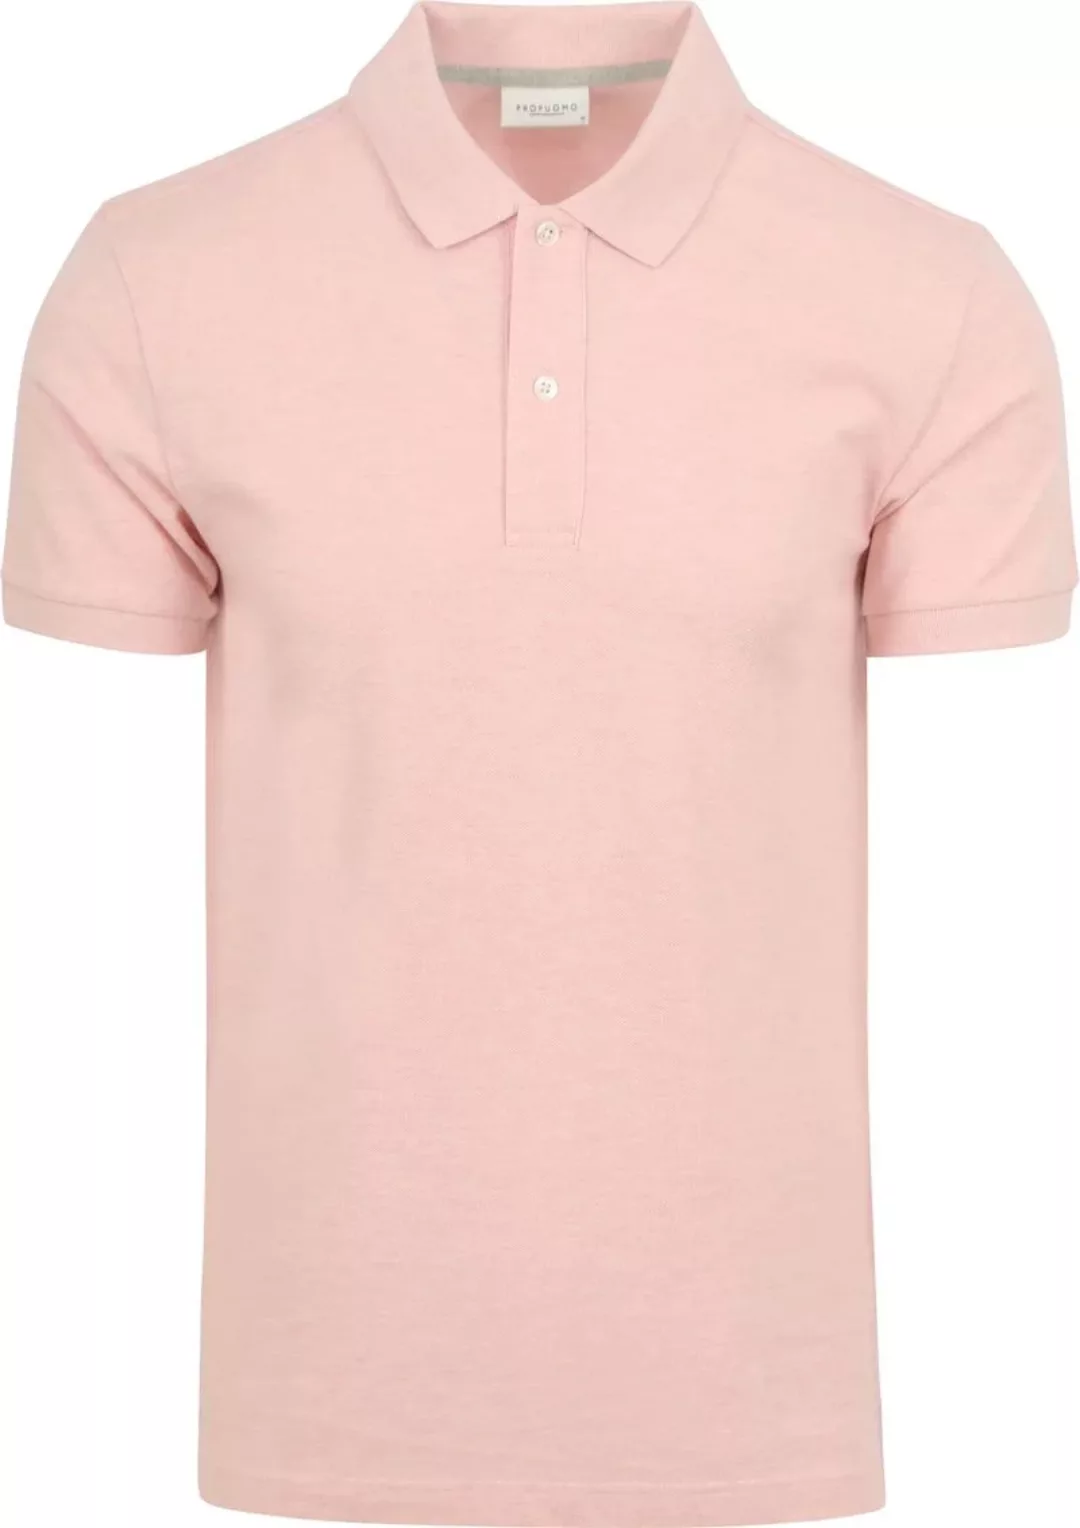 Profuomo Piqué Poloshirt Rosa - Größe M günstig online kaufen